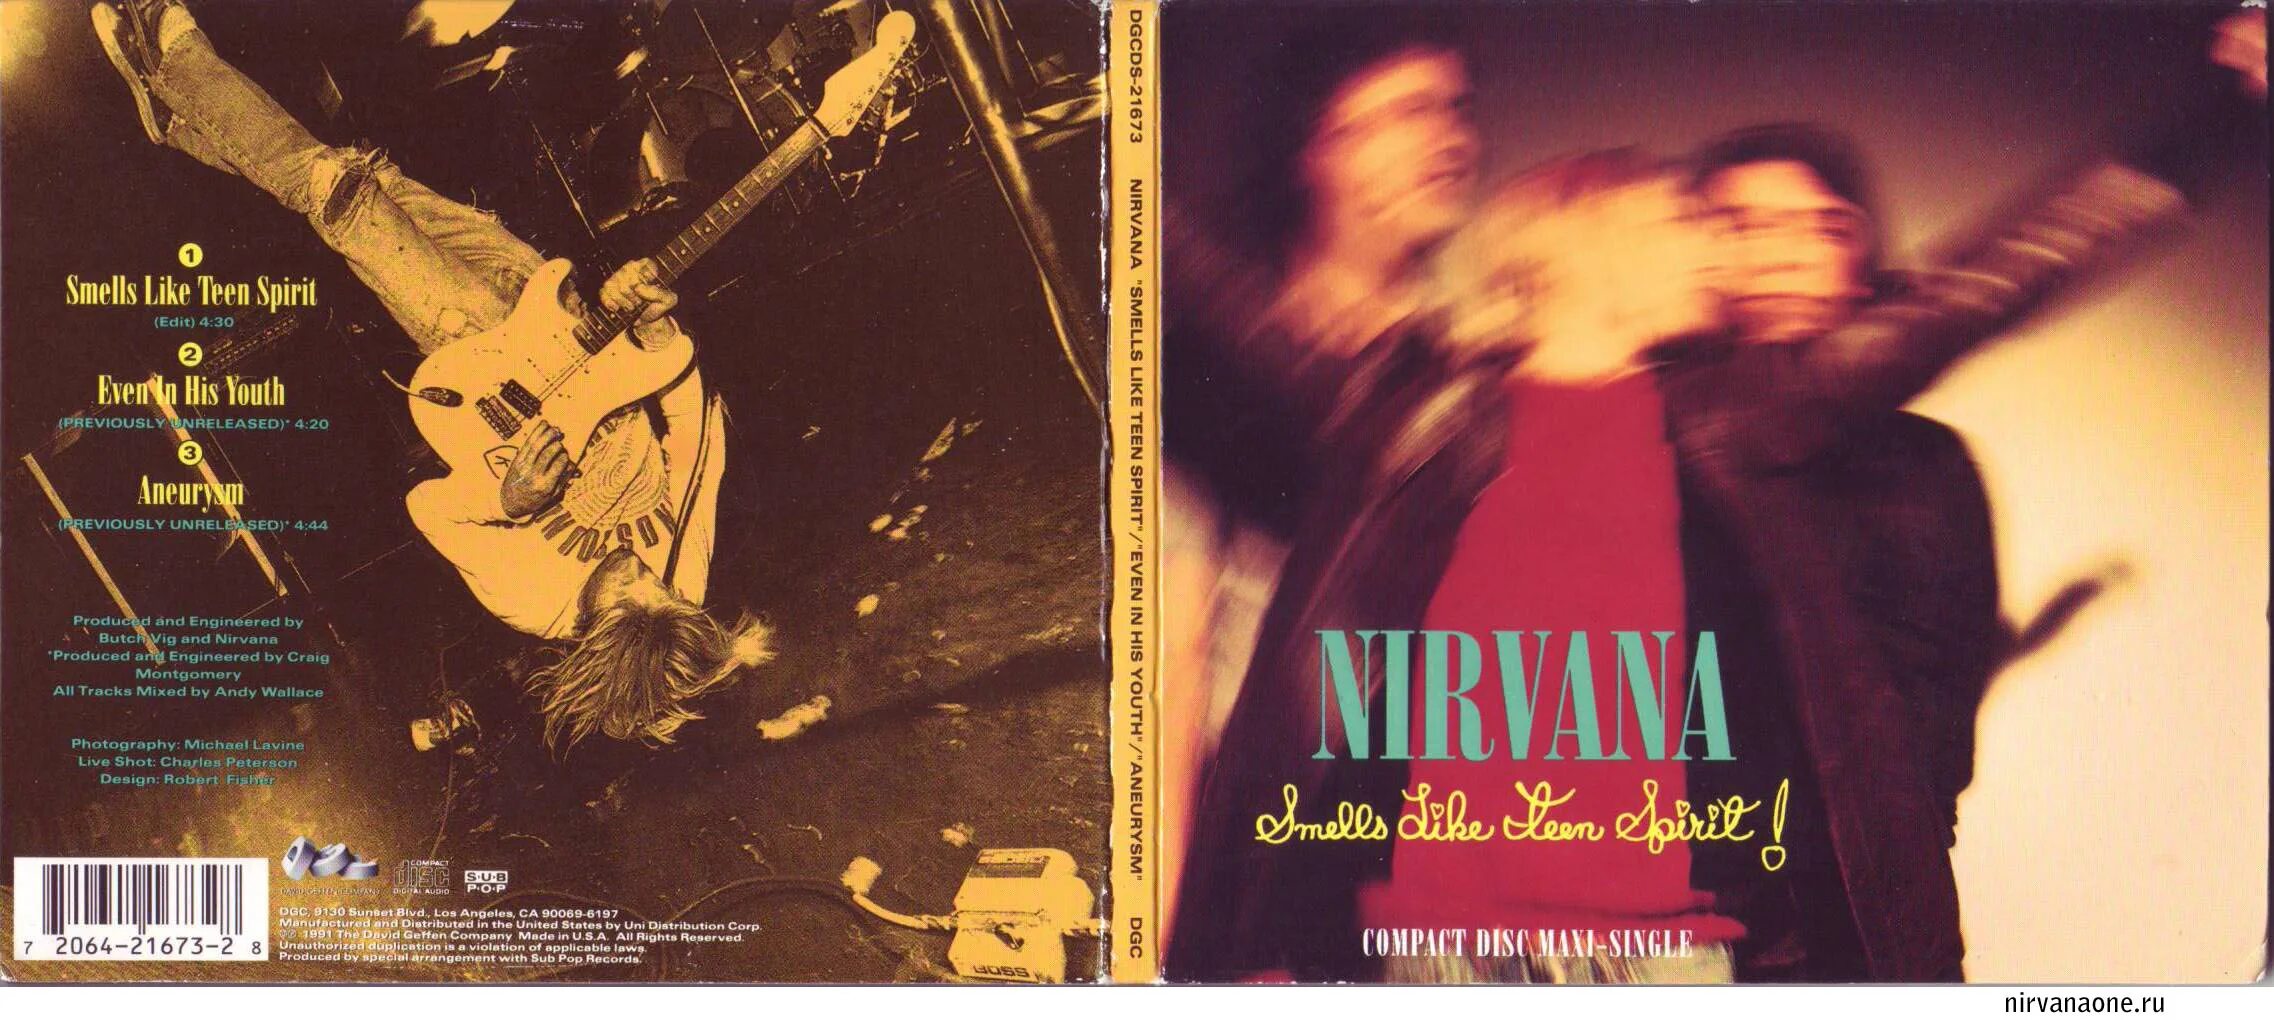 Smells like teen. Nirvana smells like teen Spirit альбом. Smells like teen Spirit обложка. Smells like teen Spirit диск. Smells like teen Spirit Nirvana 1991.